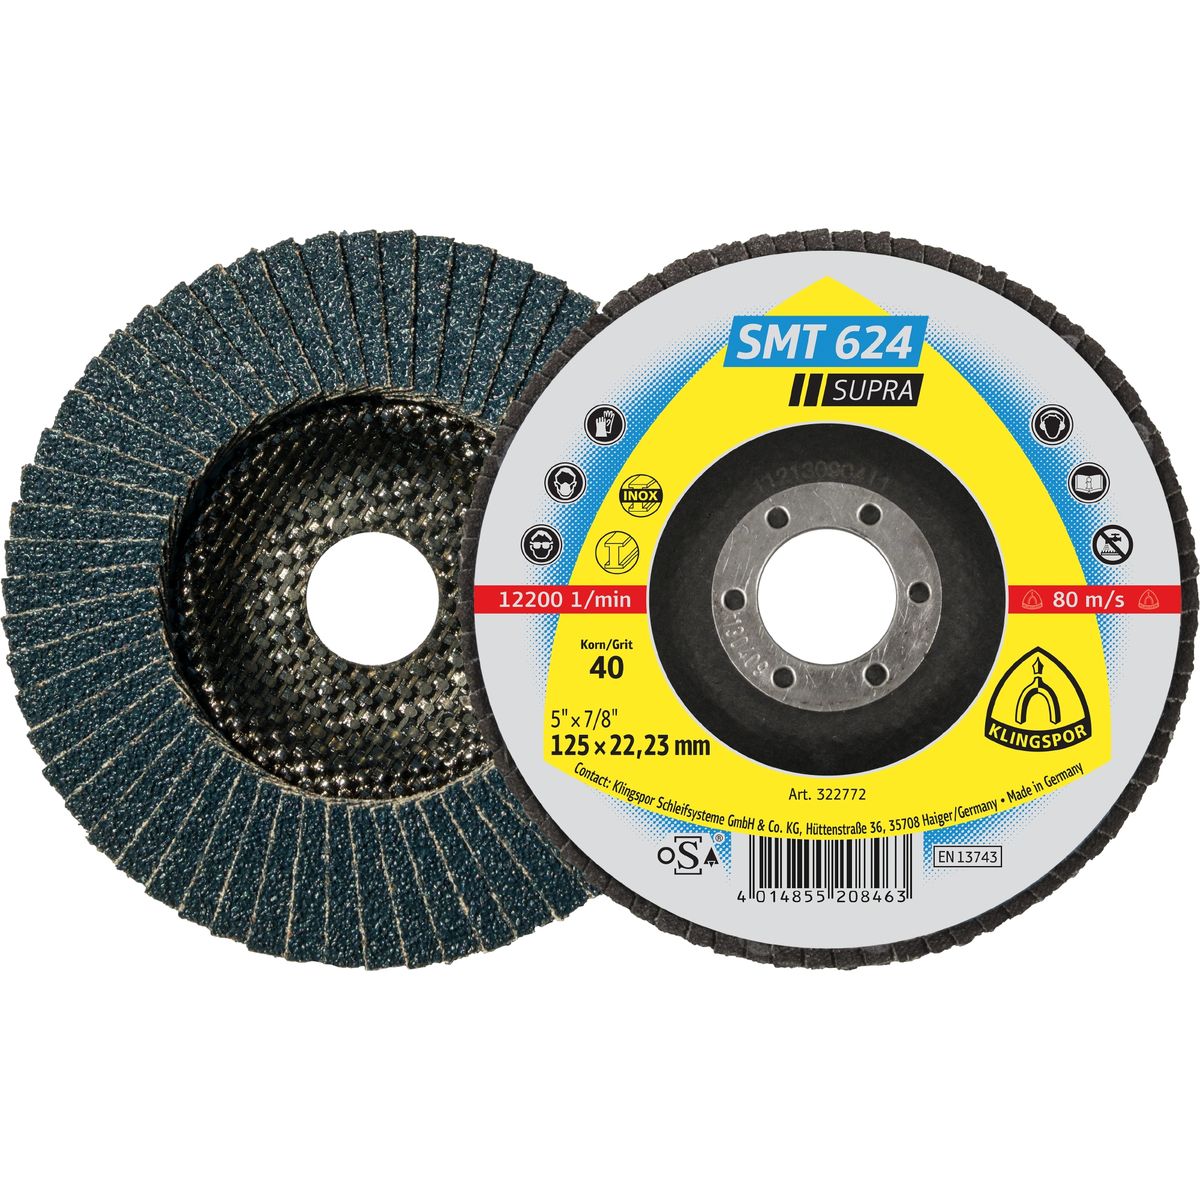 Abrasive mop disc  125X22,23mm, Grit 40 SMT 624 Klingspor